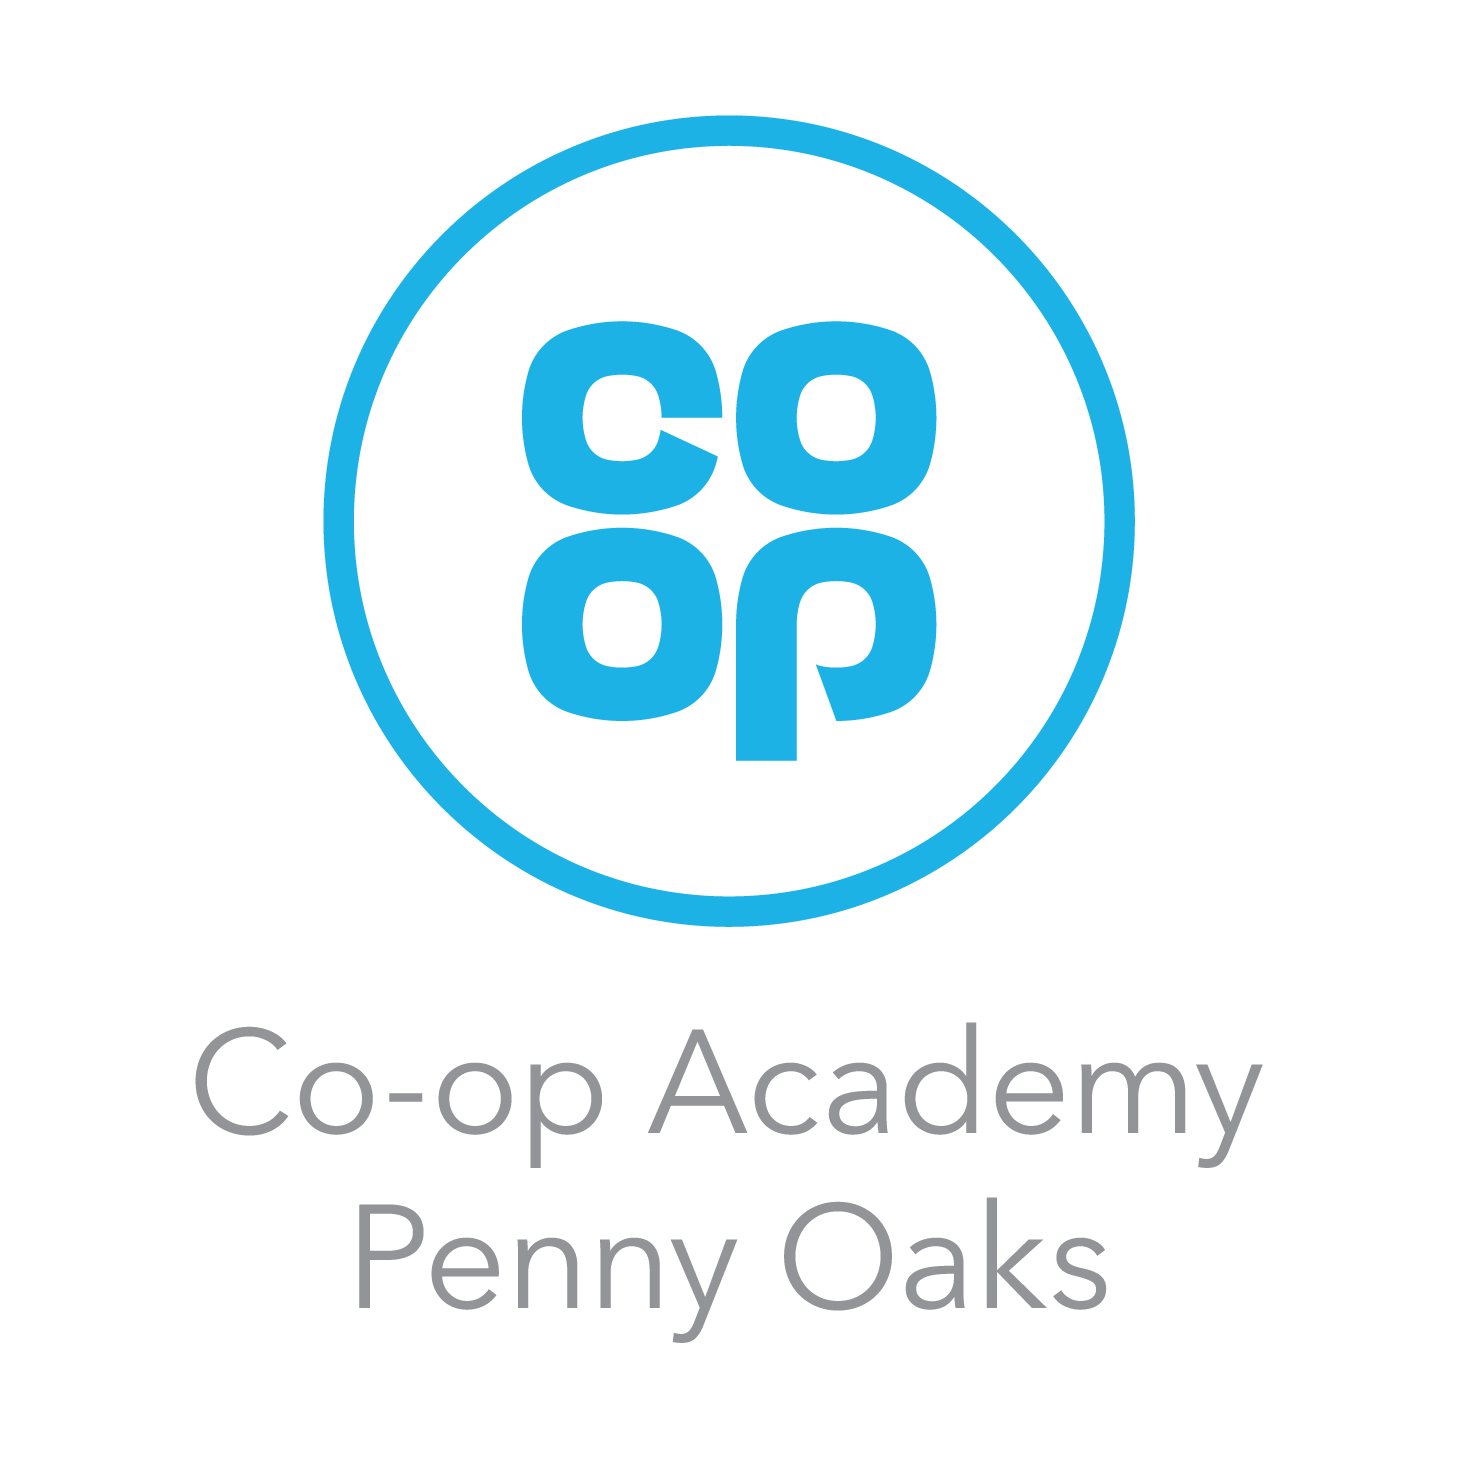 Co-op Academy Penny Oaks logo